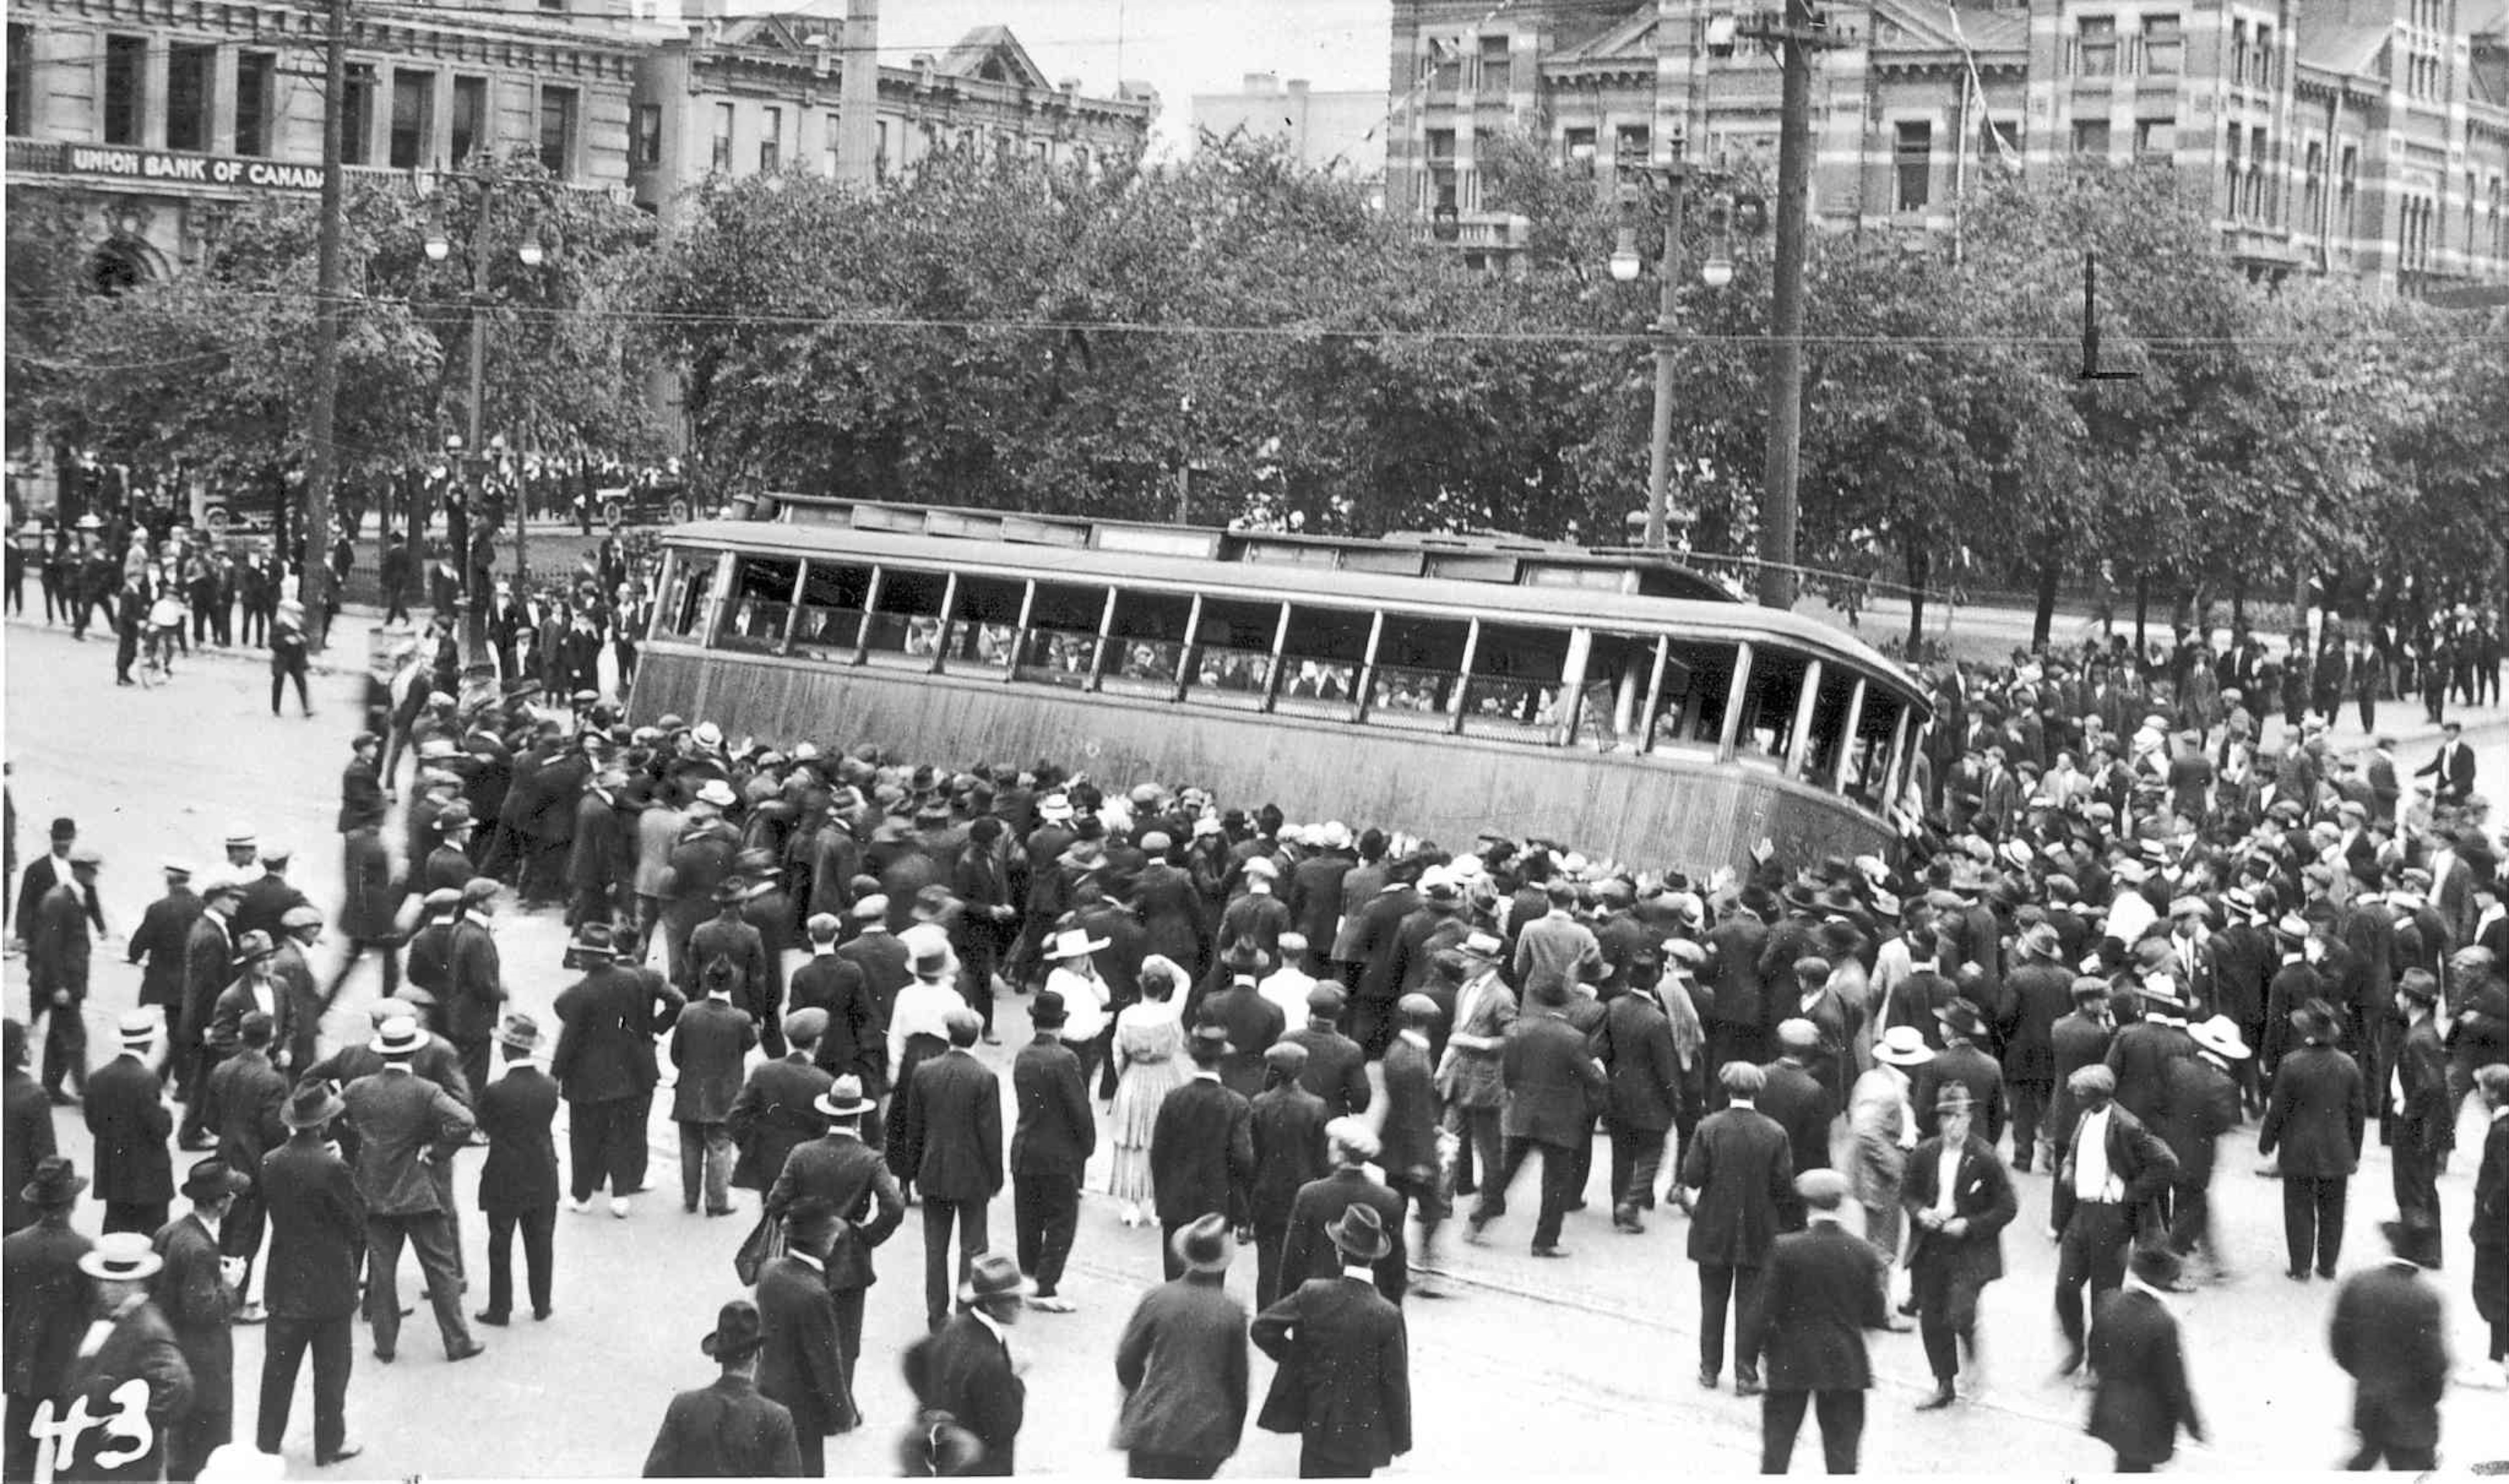 Un tramway est renversé lors de la grève de Winnipeg en 1919.